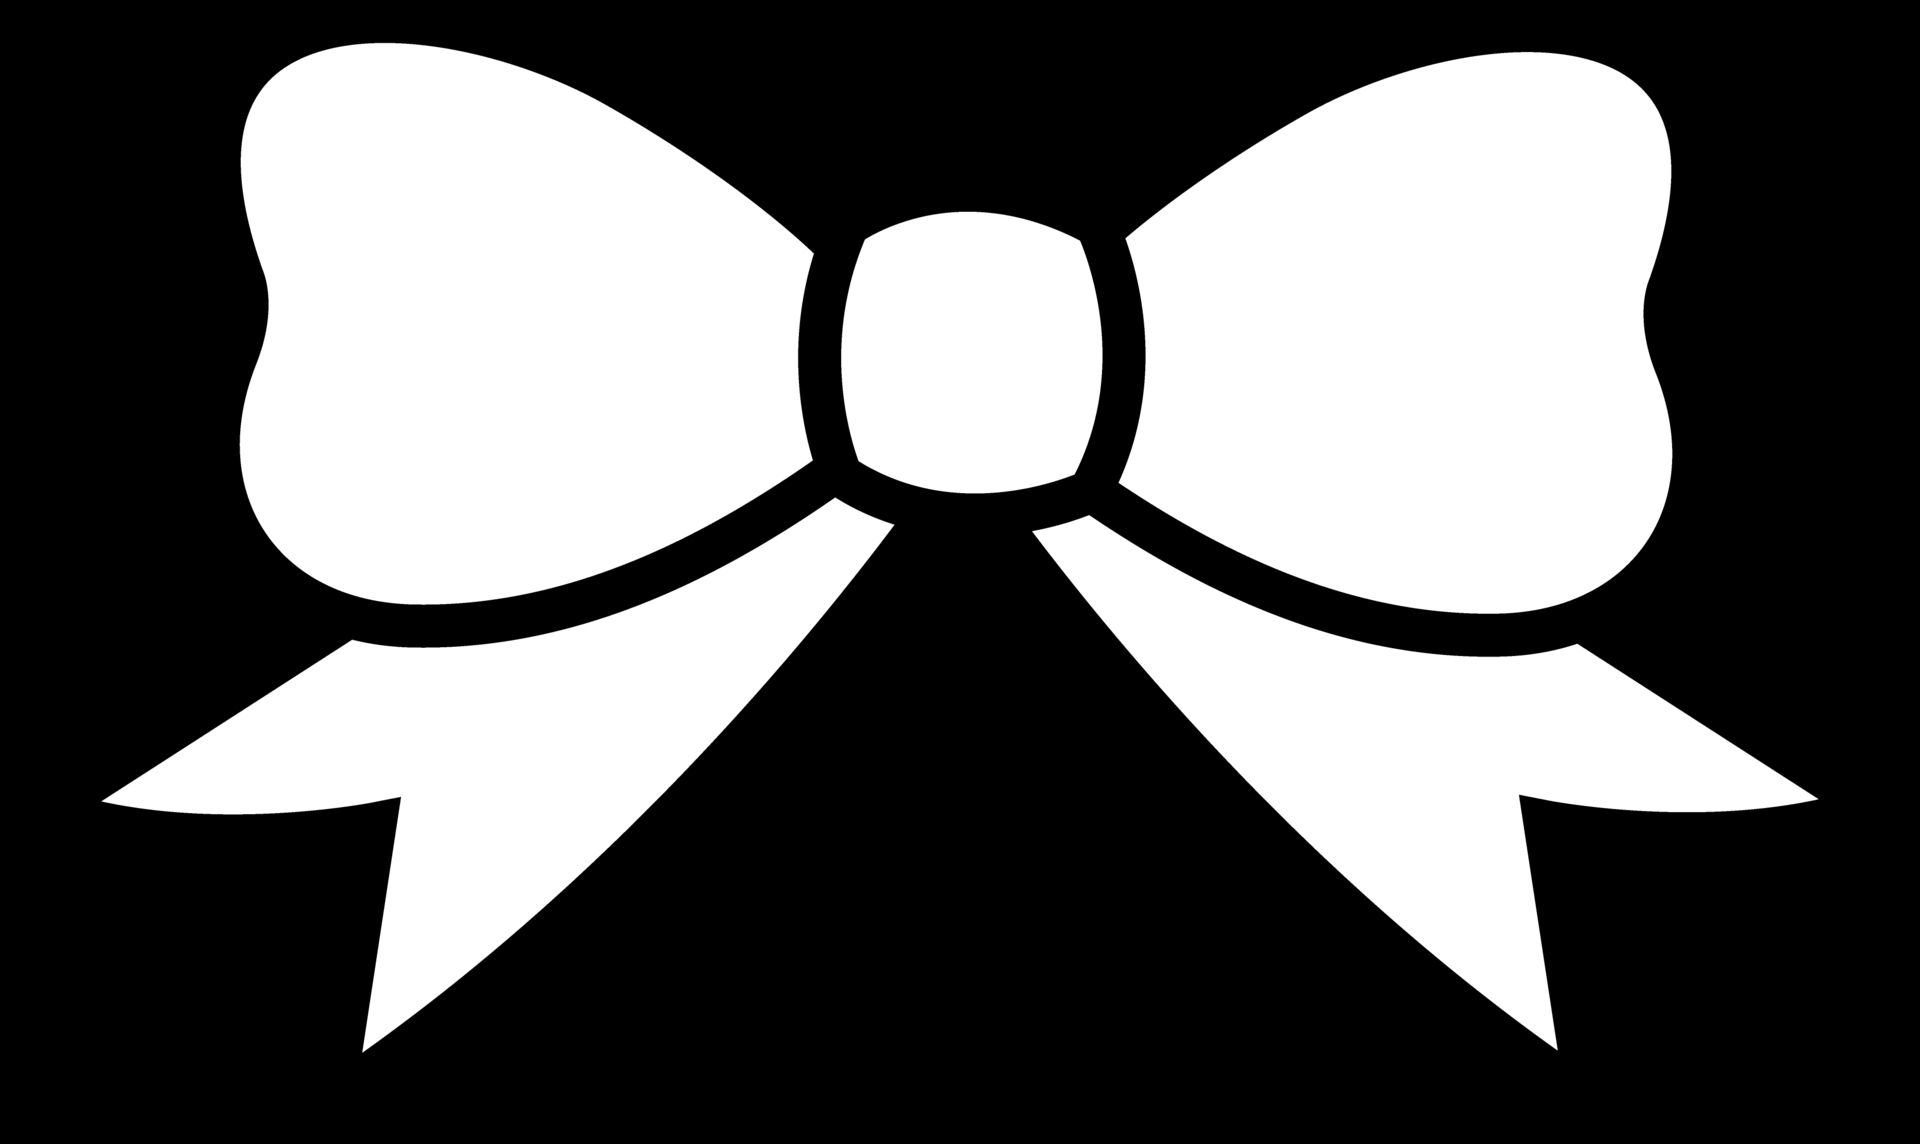 Black bow tie clip art black bow tie image image 3970